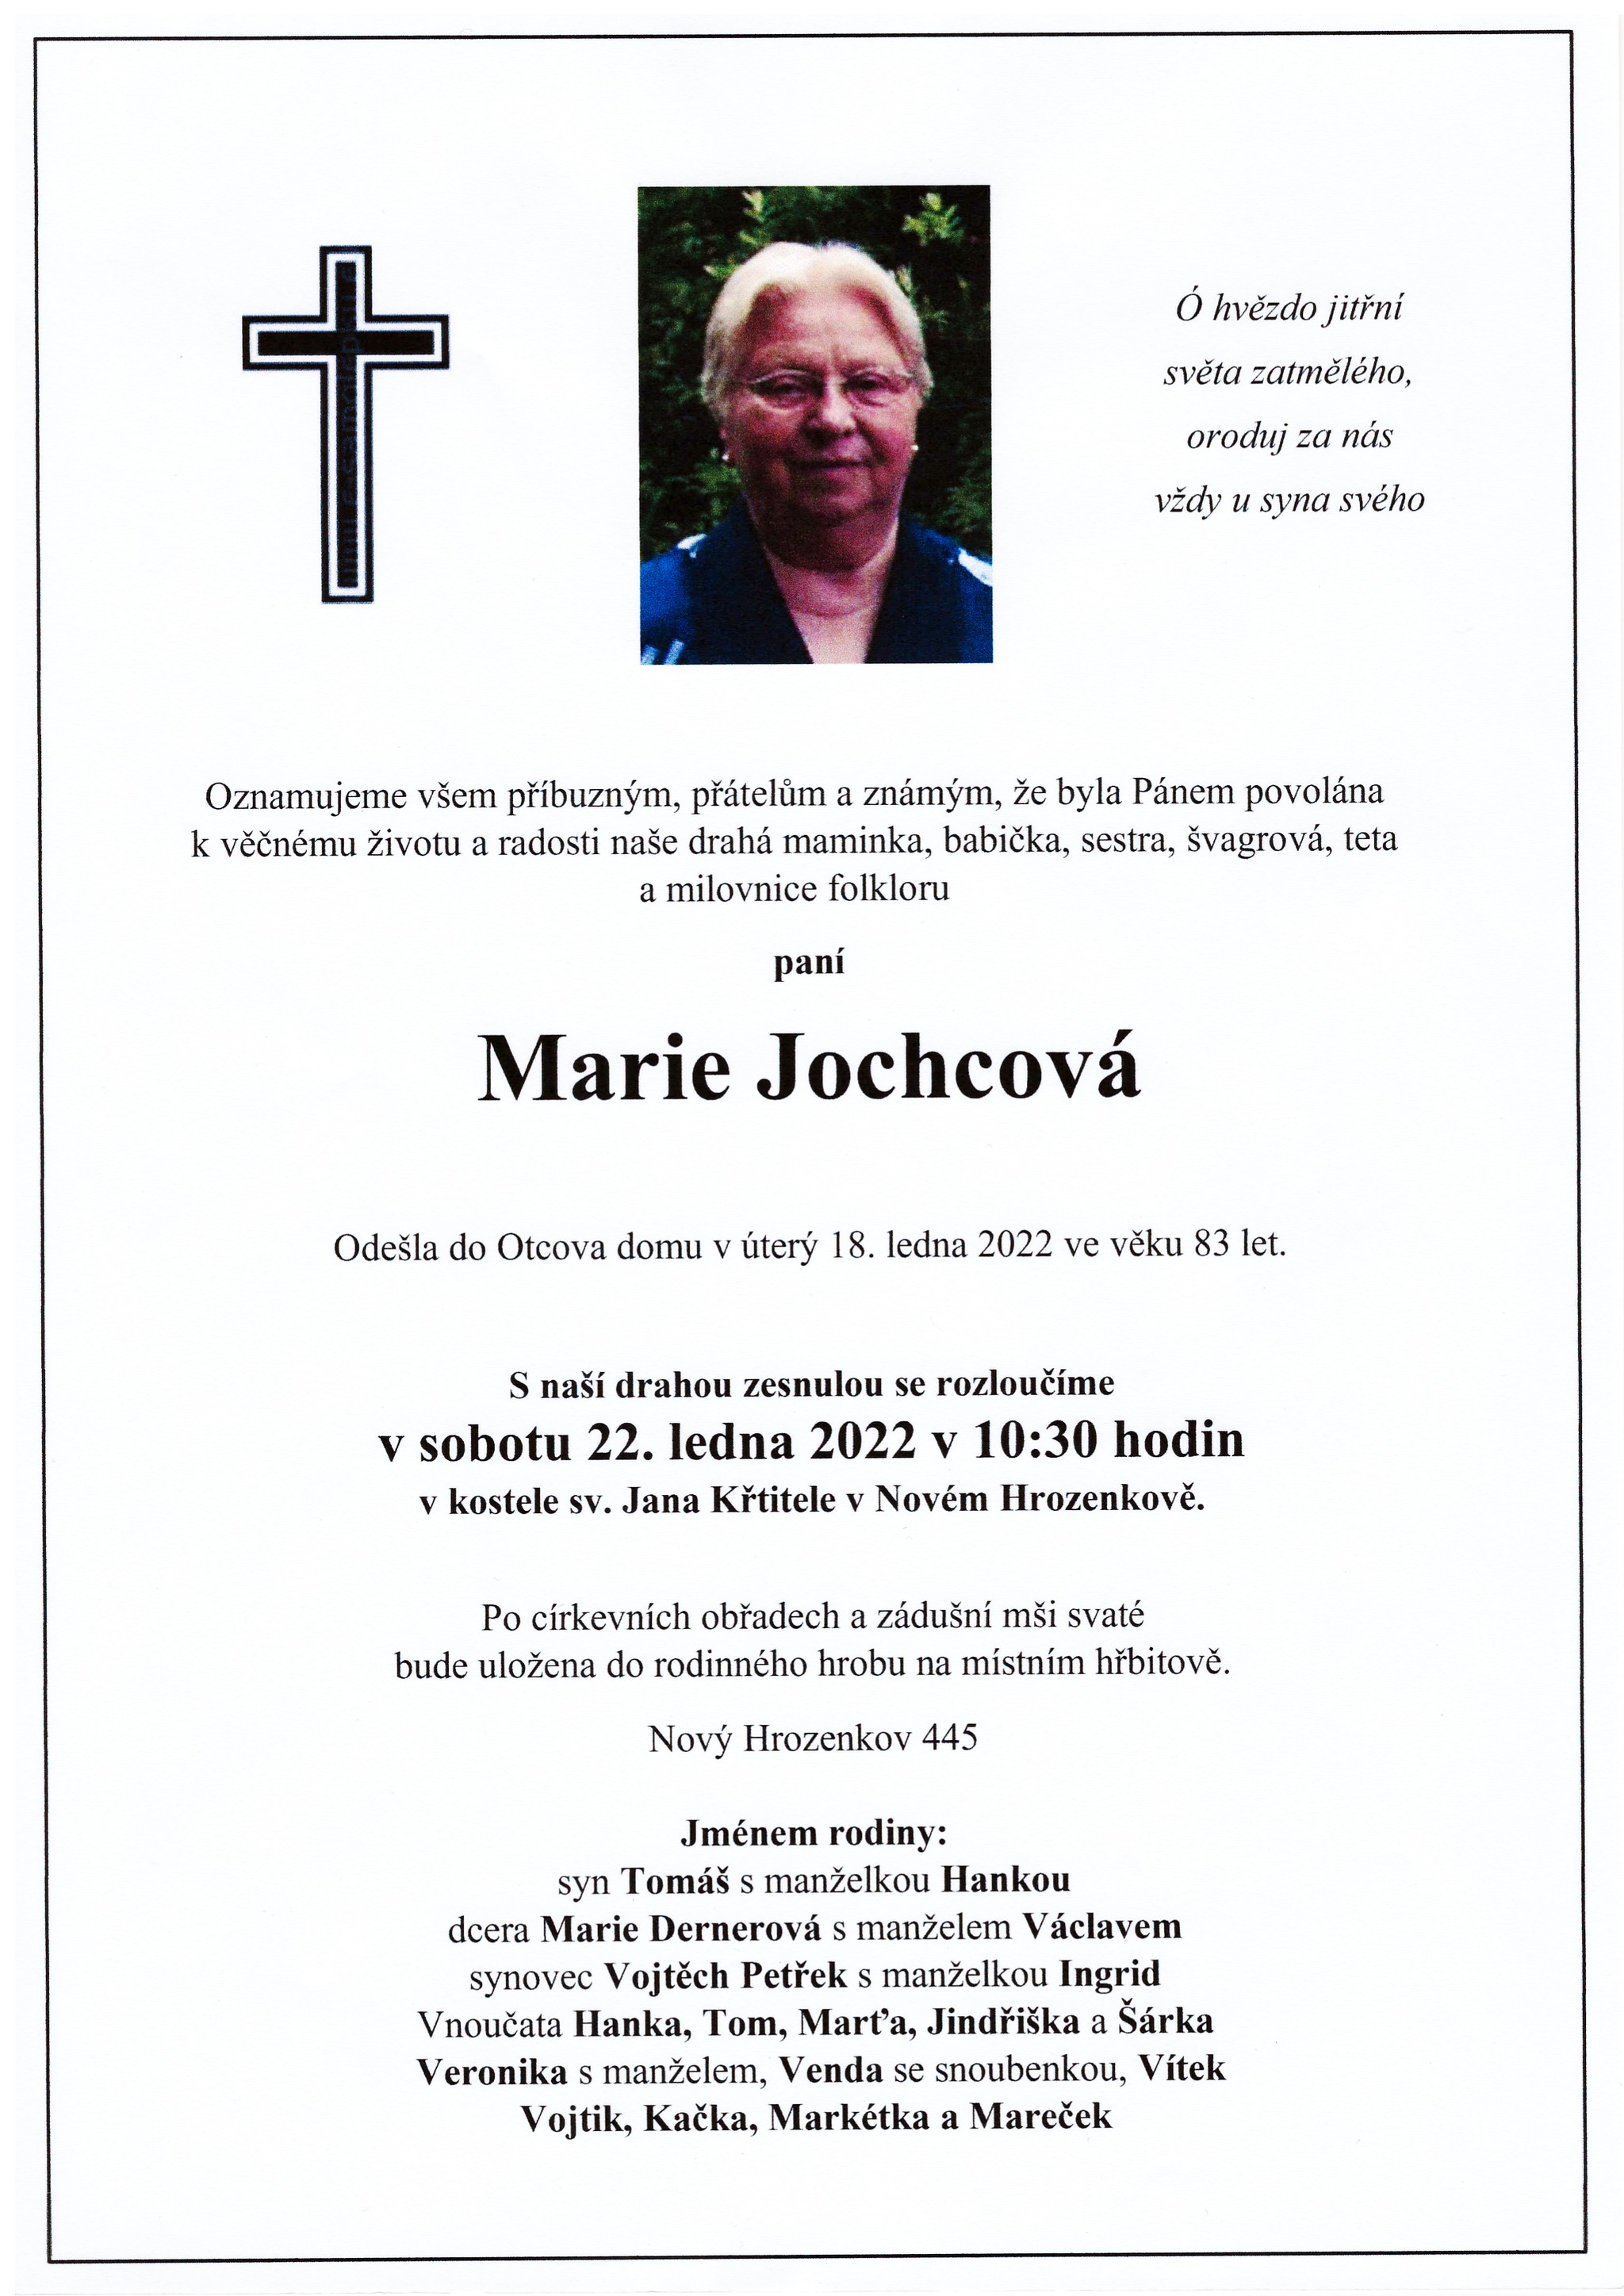 Marie Jochcová